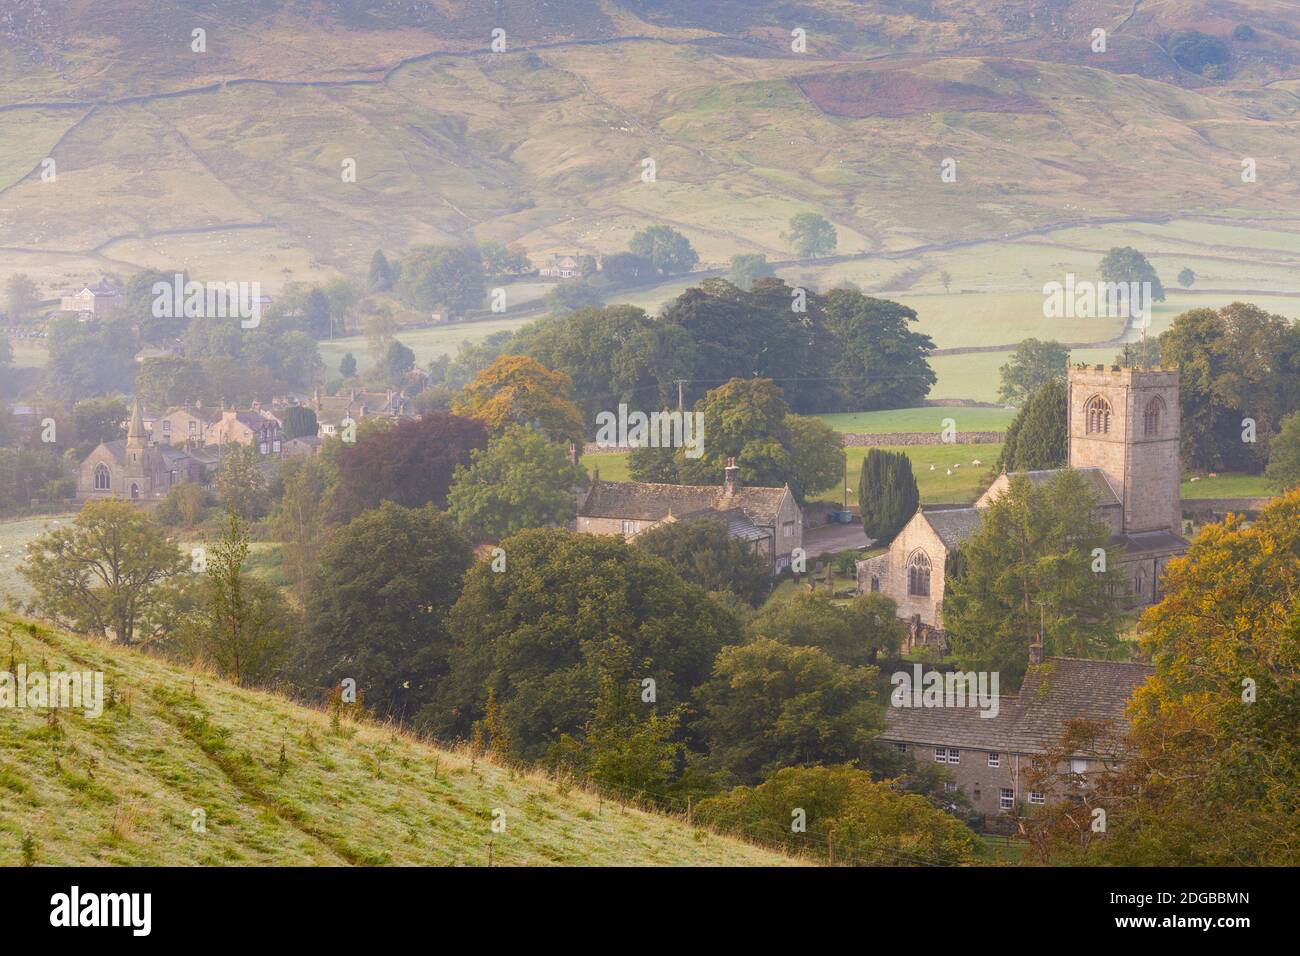 Blick auf ein Dorf, Burnsall, Yorkshire Dales Nationalpark, North Yorkshire, England Stockfoto